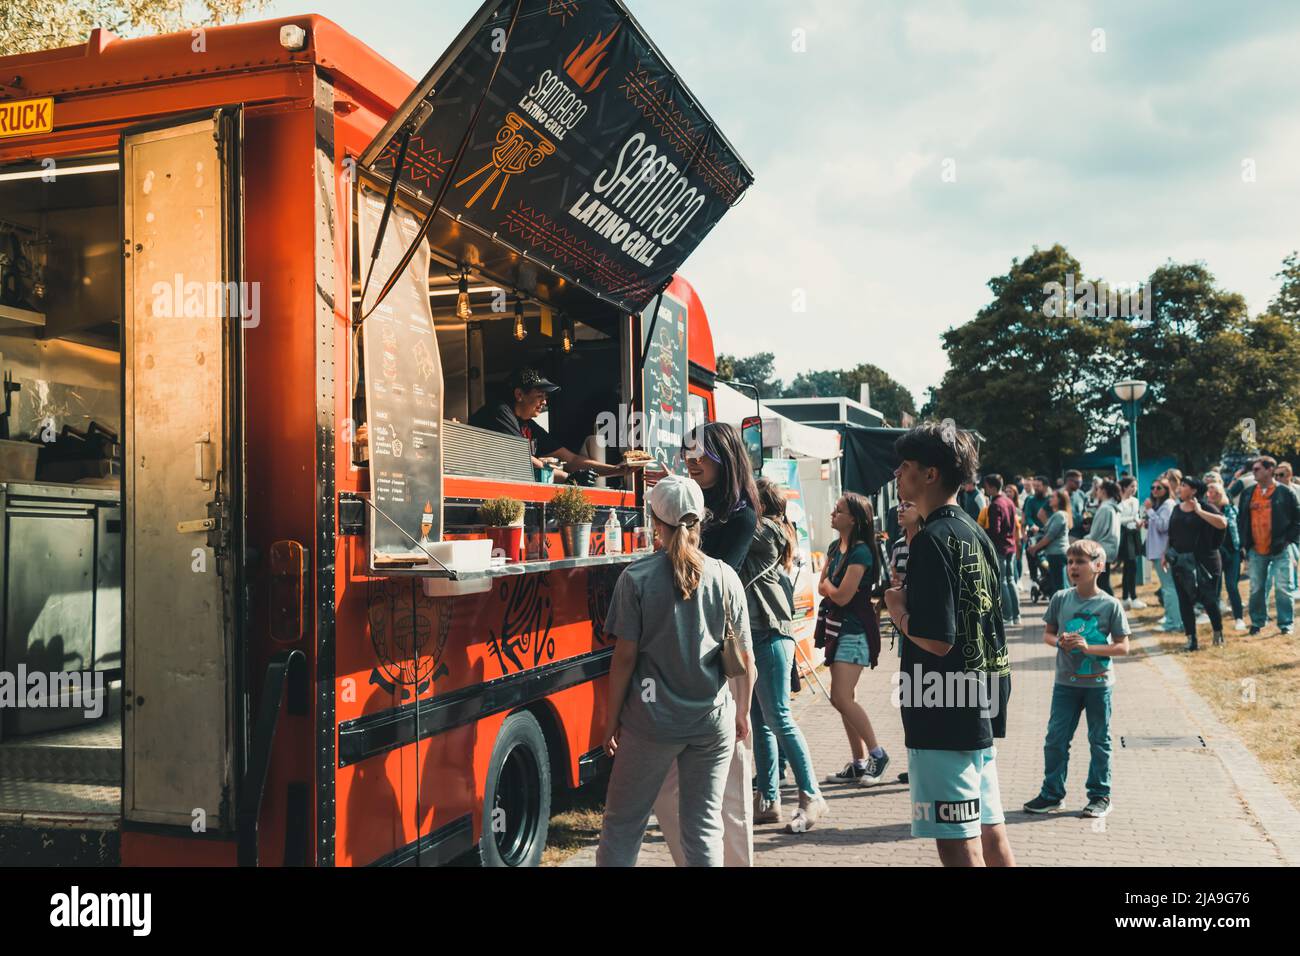 Hockenheim, Deutschland - 28. Mai 2022: Street Food Festival mit Food Trucks und Leuten, die internationales Street Food und fancy Food bestellen Stockfoto